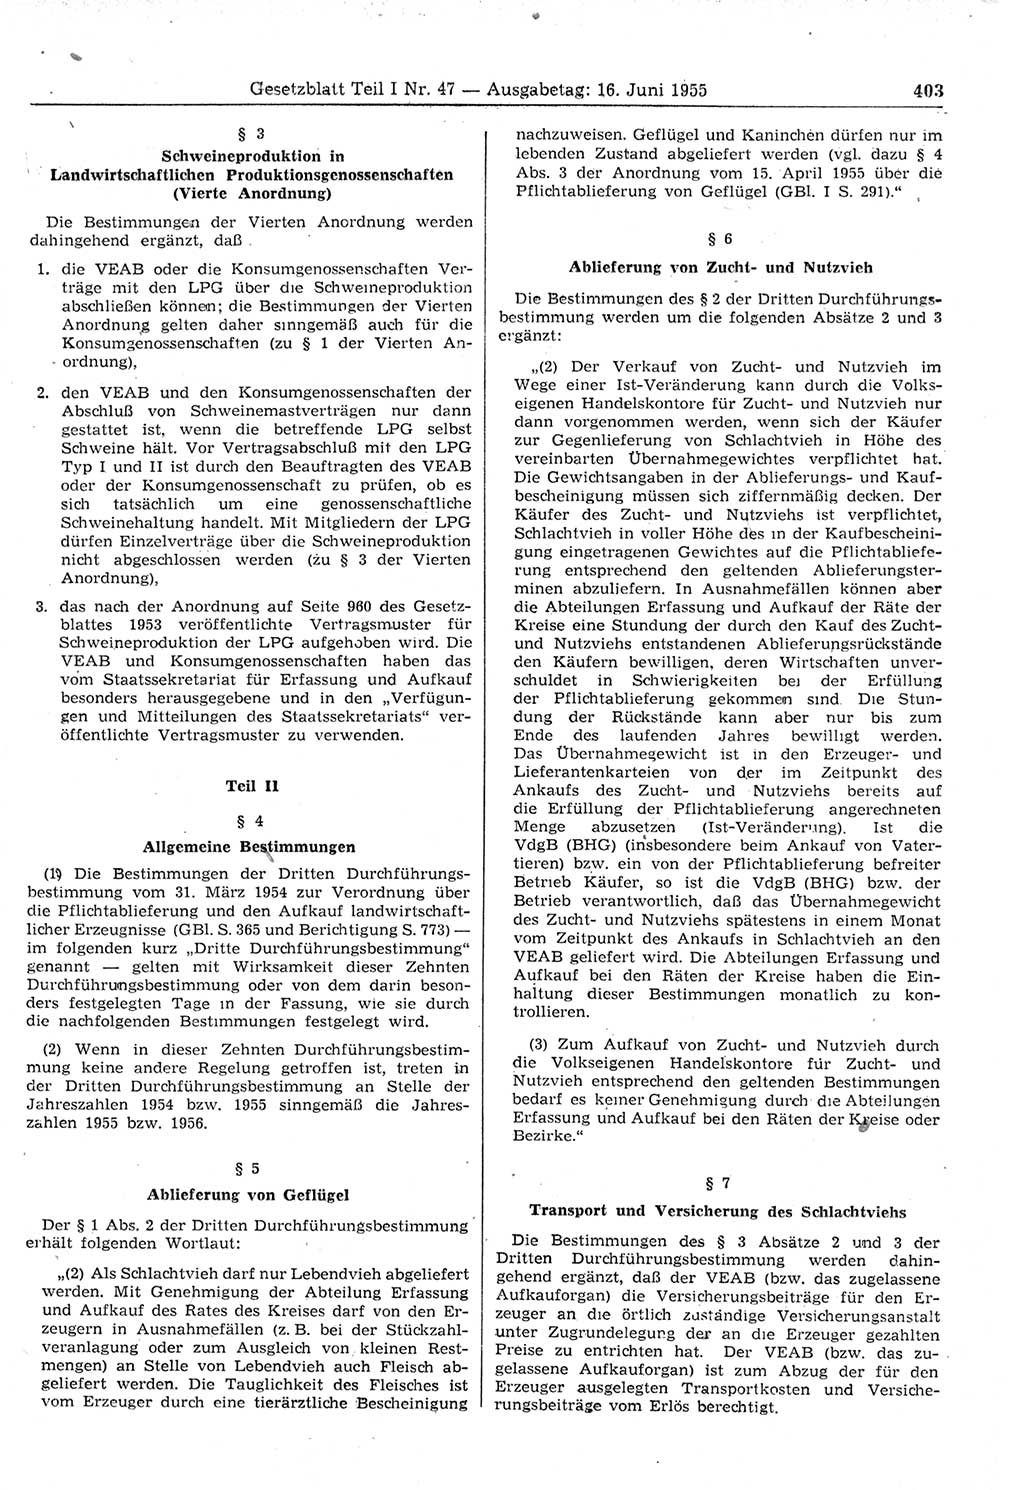 Gesetzblatt (GBl.) der Deutschen Demokratischen Republik (DDR) Teil Ⅰ 1955, Seite 403 (GBl. DDR Ⅰ 1955, S. 403)